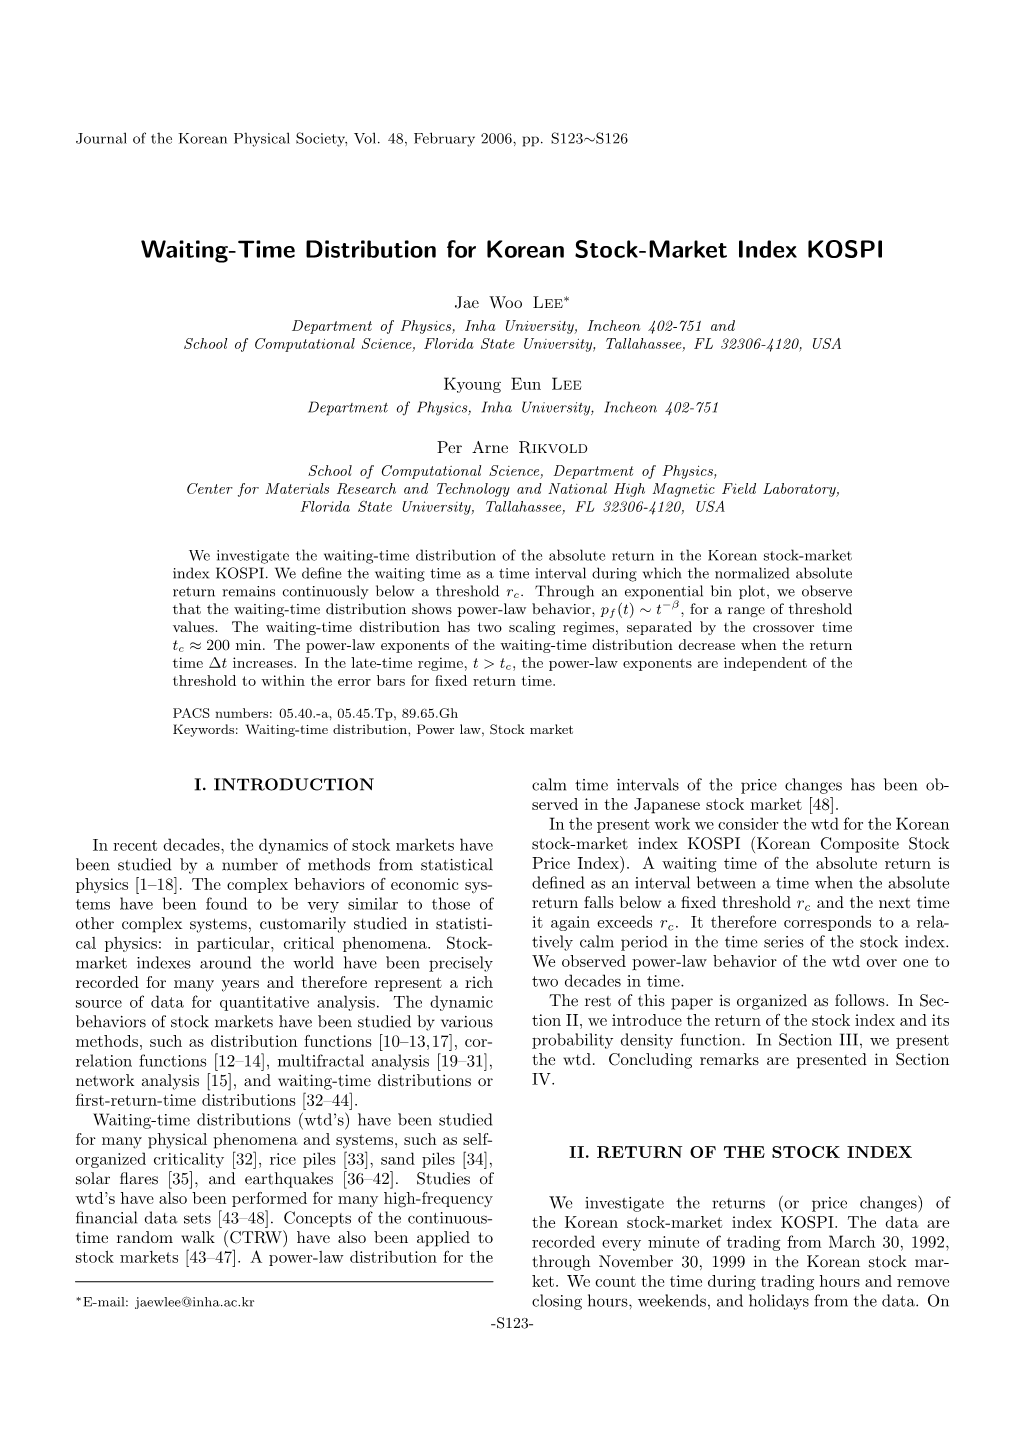 Waiting-Time Distribution for Korean Stock-Market Index KOSPI